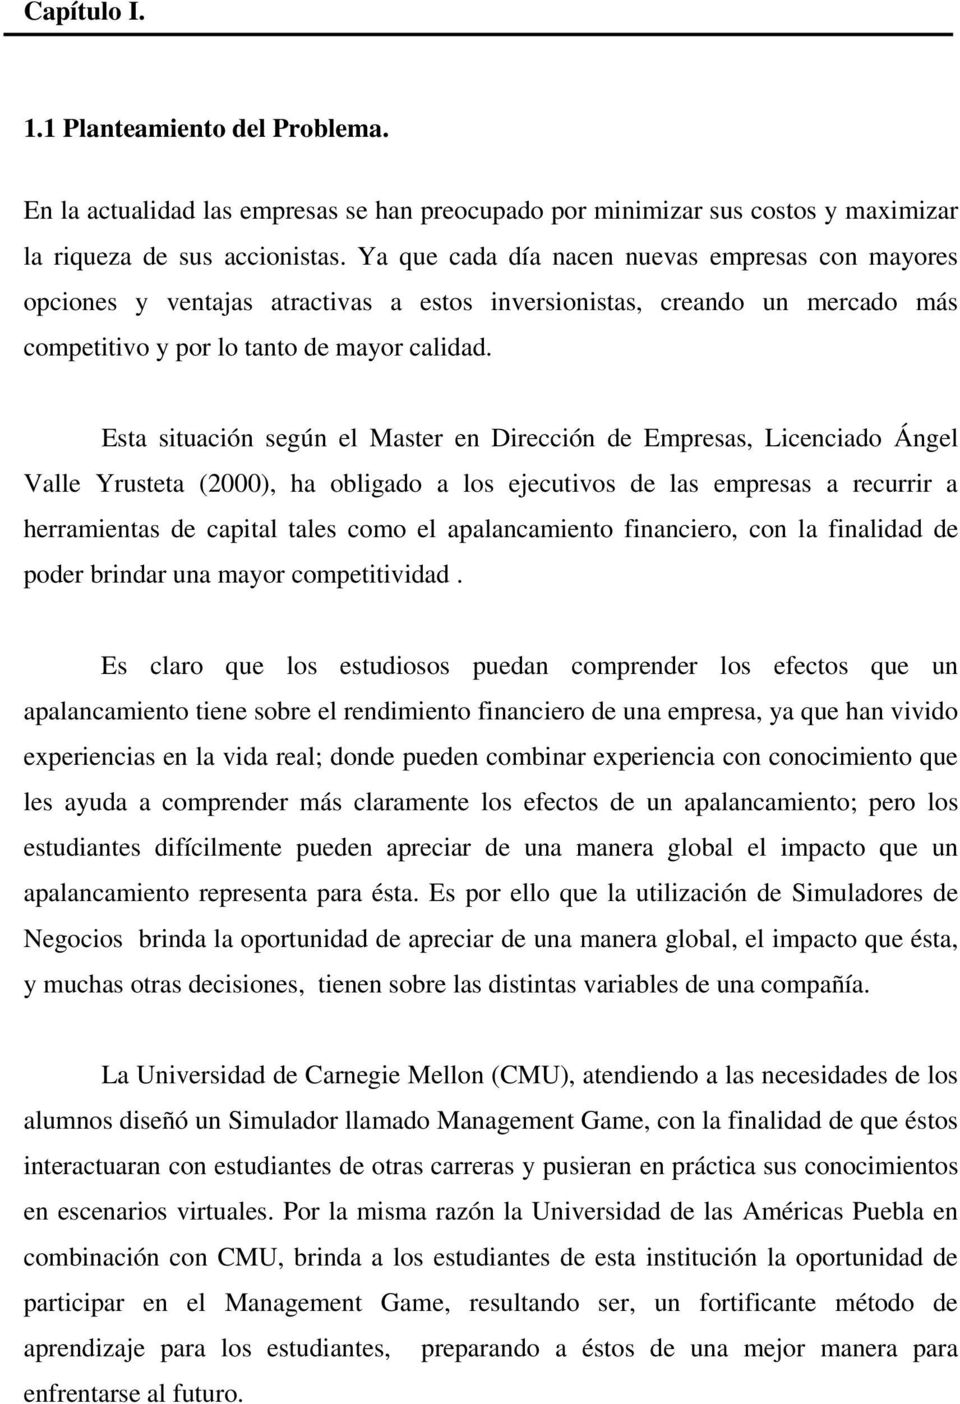 Esta situación según el Master en Dirección de Empresas, Licenciado Ángel Valle Yrusteta (2000), ha obligado a los ejecutivos de las empresas a recurrir a herramientas de capital tales como el